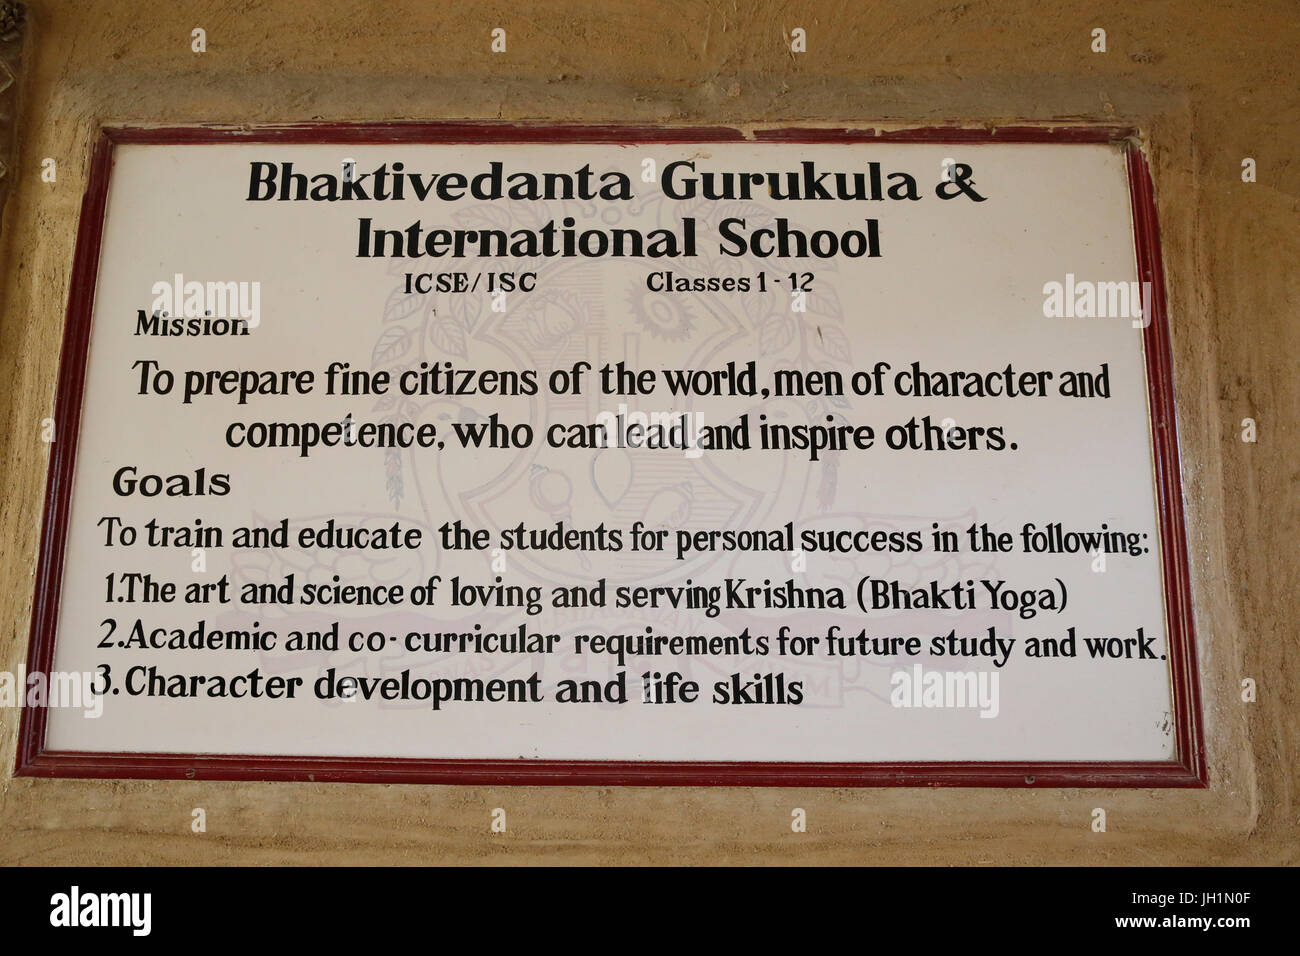 Bhaktivedanta Gurukula befindet sich im ISKCON Radha-Krishna-Tempel, Vrindavan, Uttar Pradesh. Ankündigung geändert werden. Indien. Stockfoto